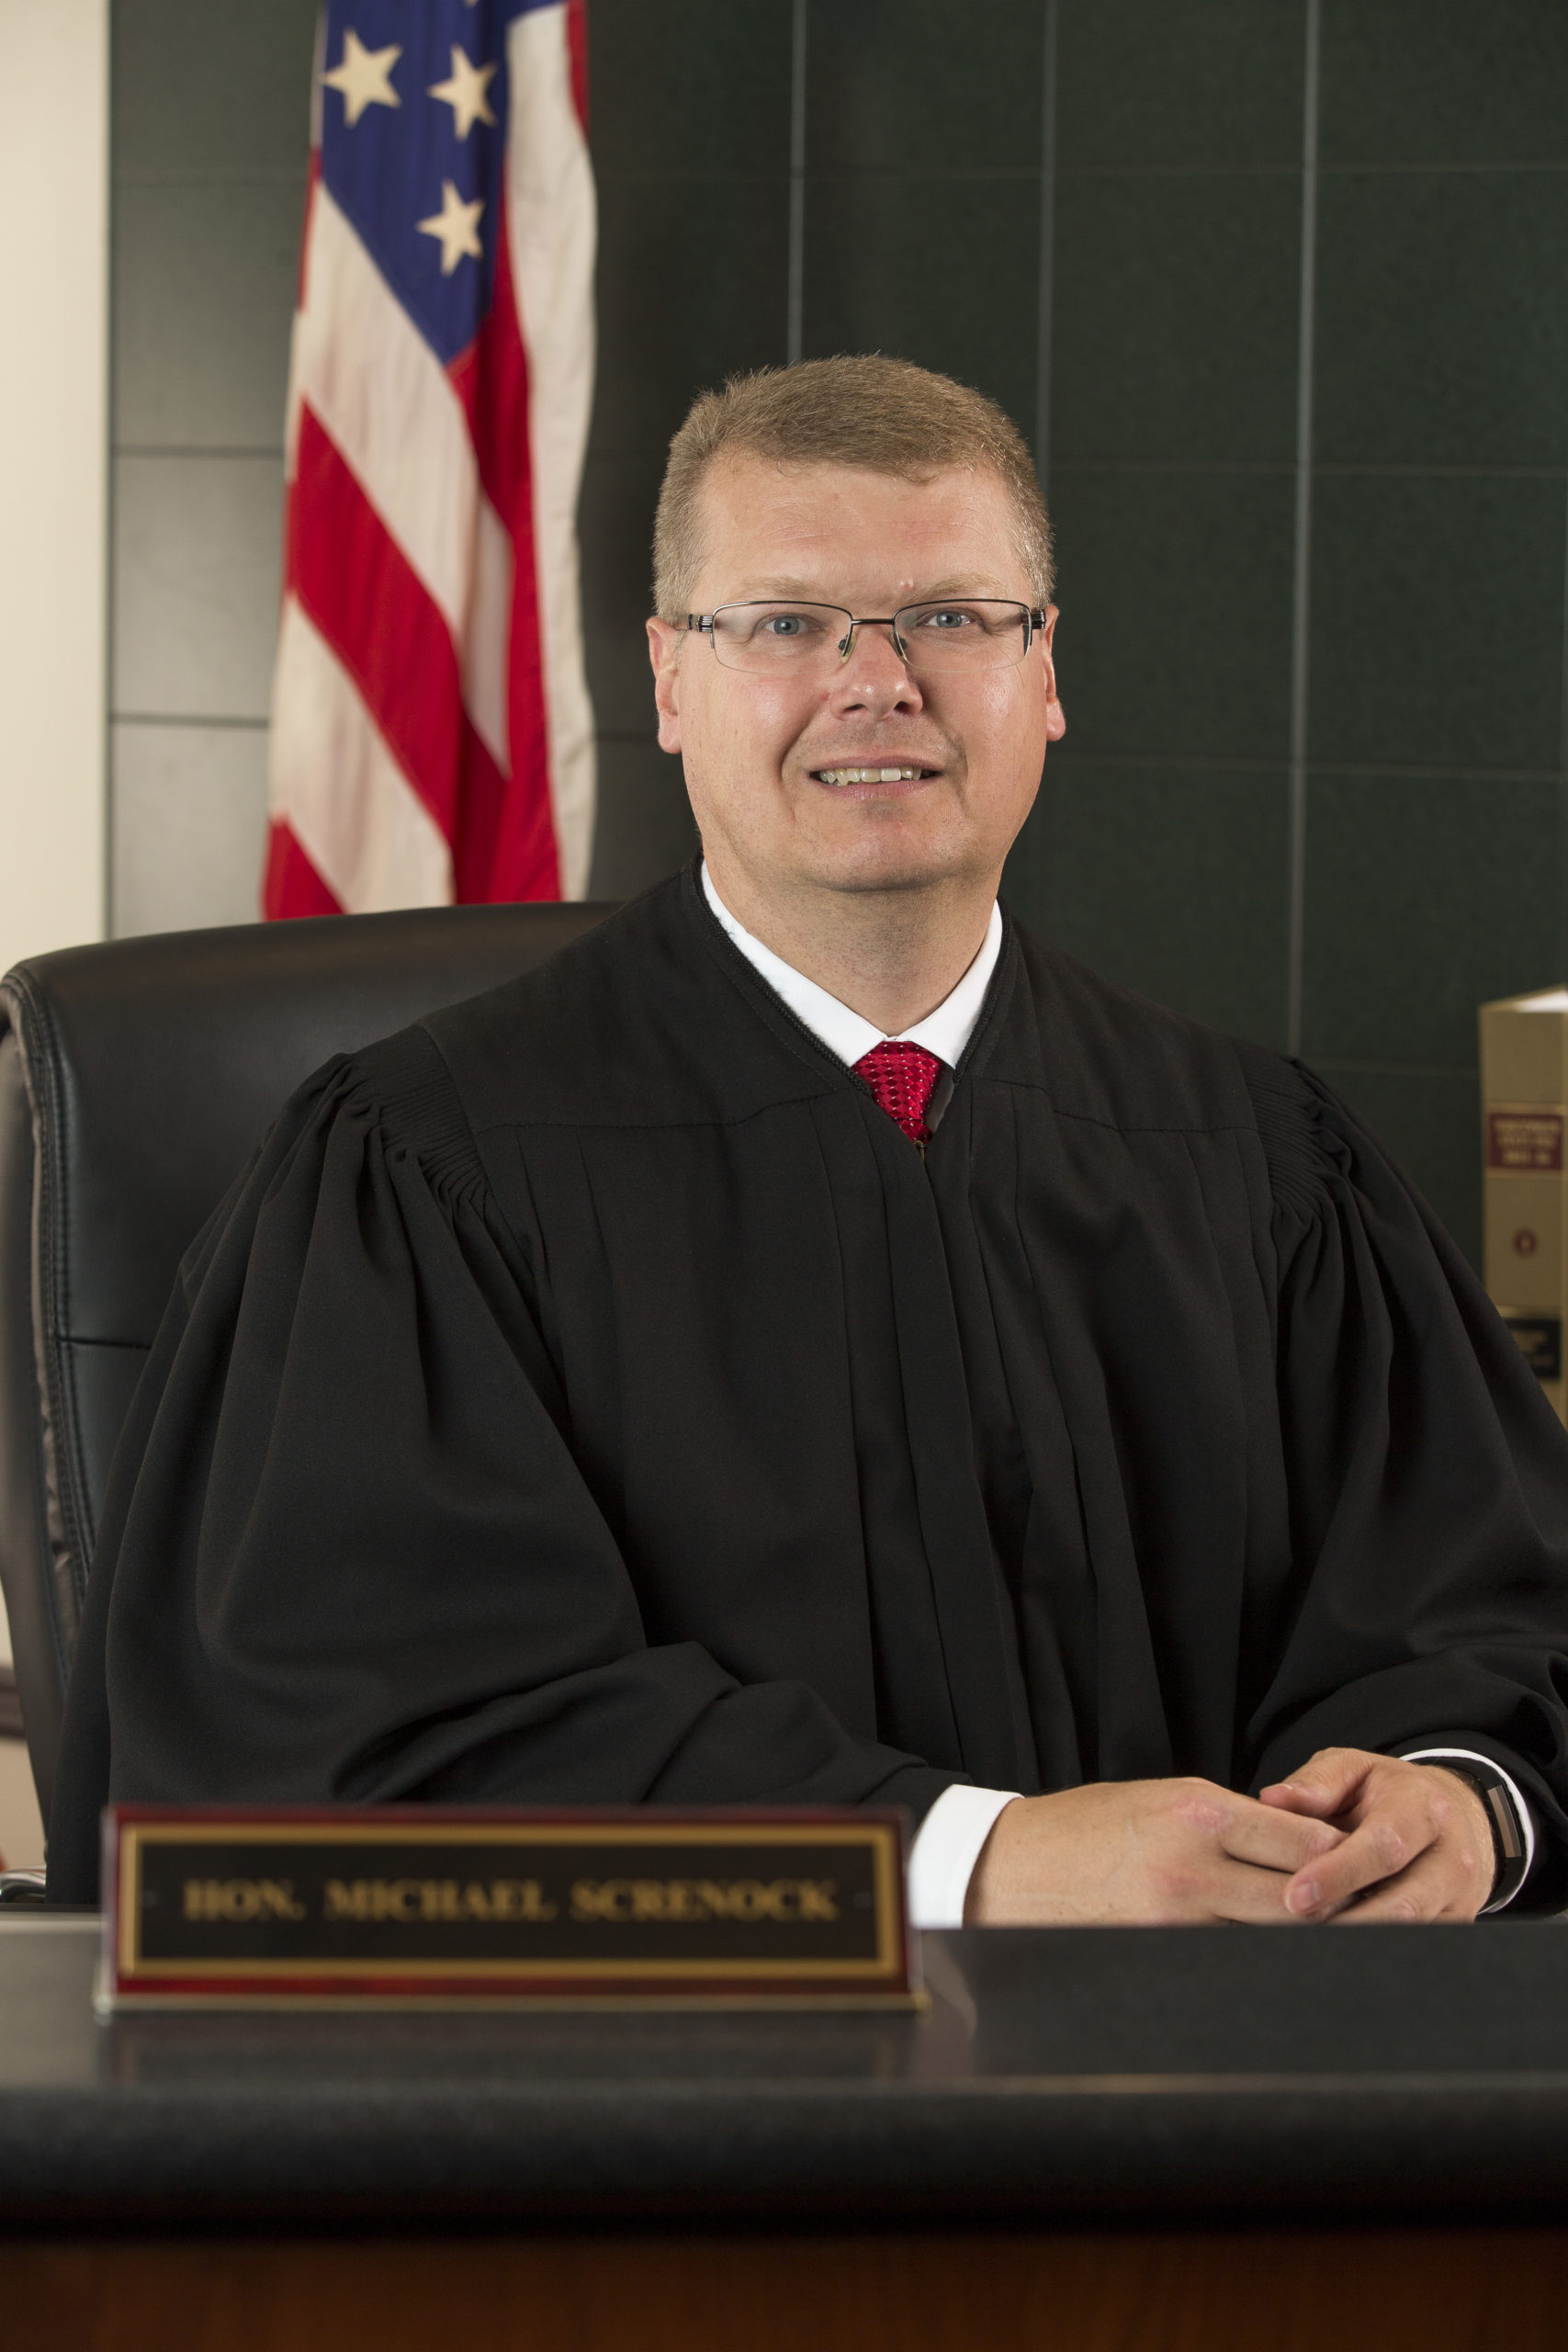 Judge Michael Screnock